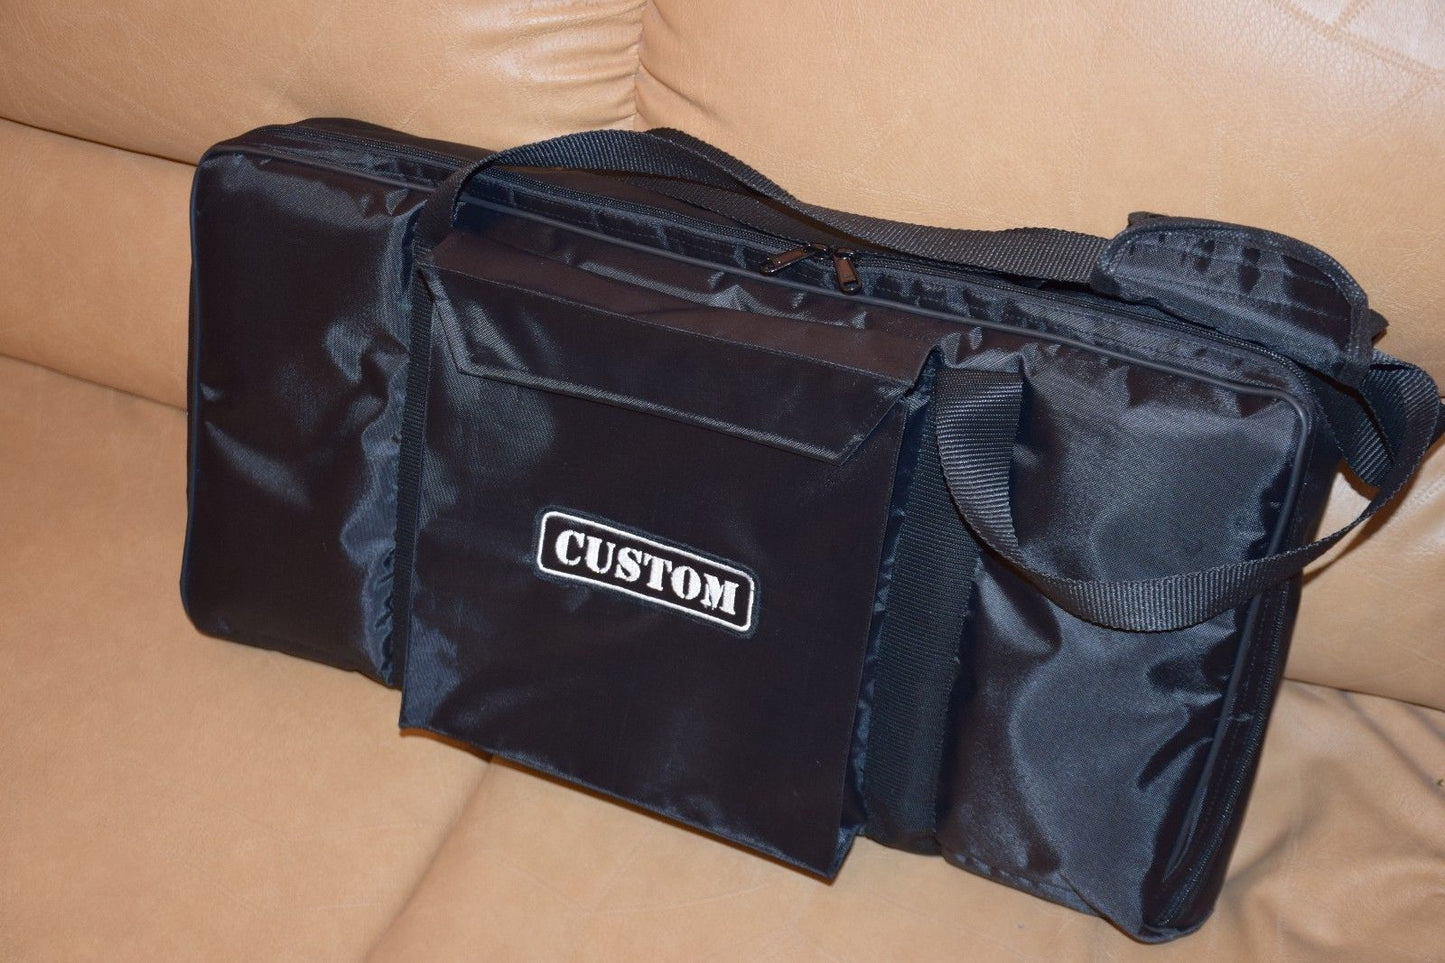 Korg Triton Taktile 49 Key Custom Padded Keyboard and Synth Travel Bag Soft Case Inside Velvet Interior Heavy Duty Nylon Protection Slip Cover